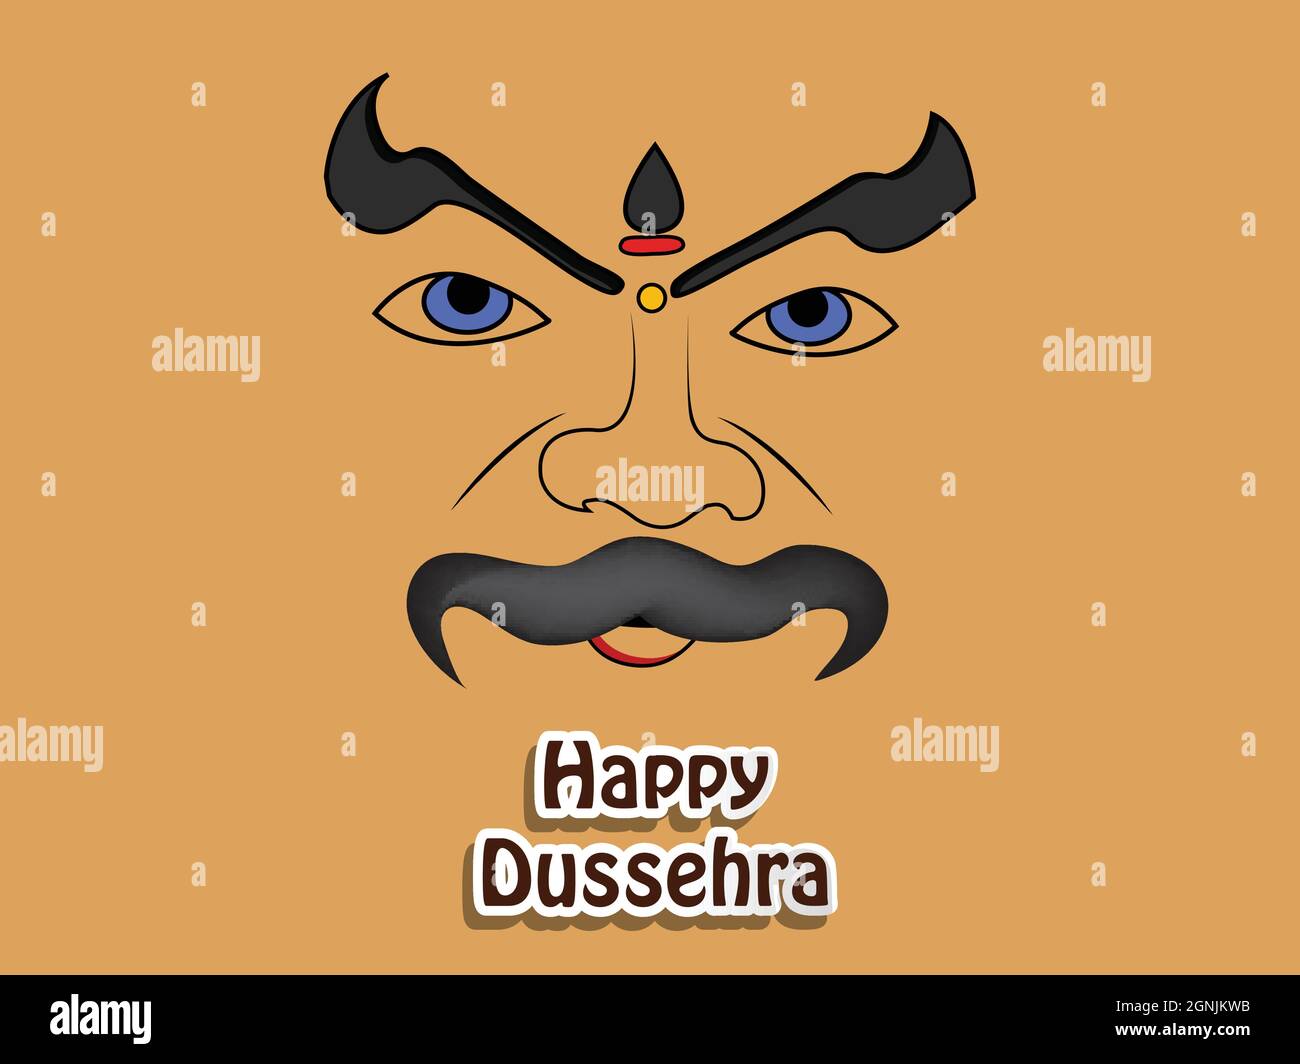 Festival hindou de Dussehra en arrière-plan Illustration de Vecteur